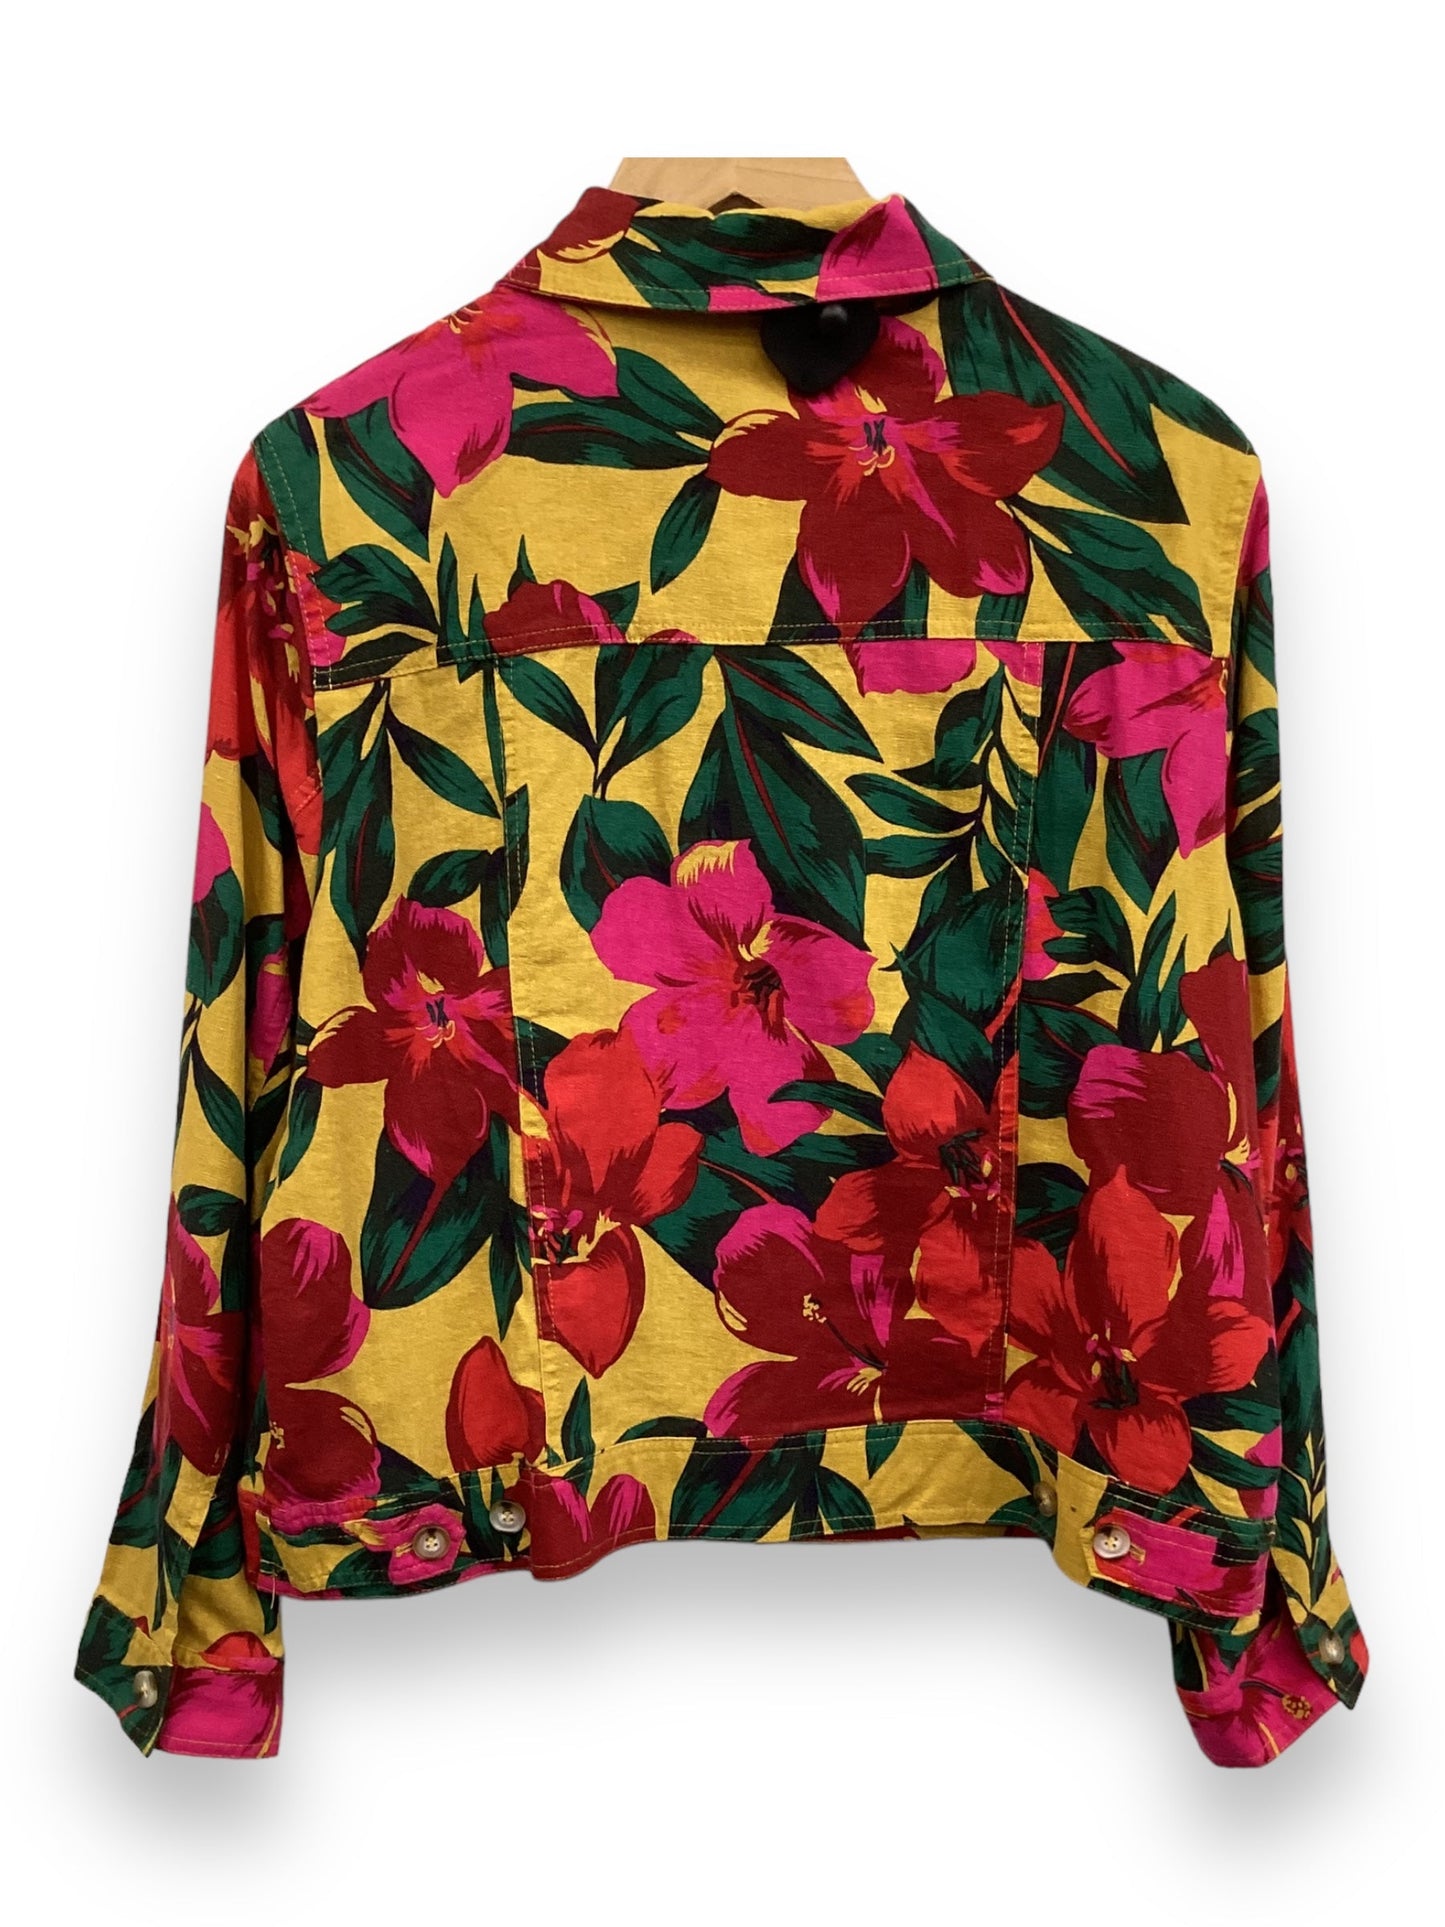 Floral Print Shorts Set Cynthia Rowley, Size Xl